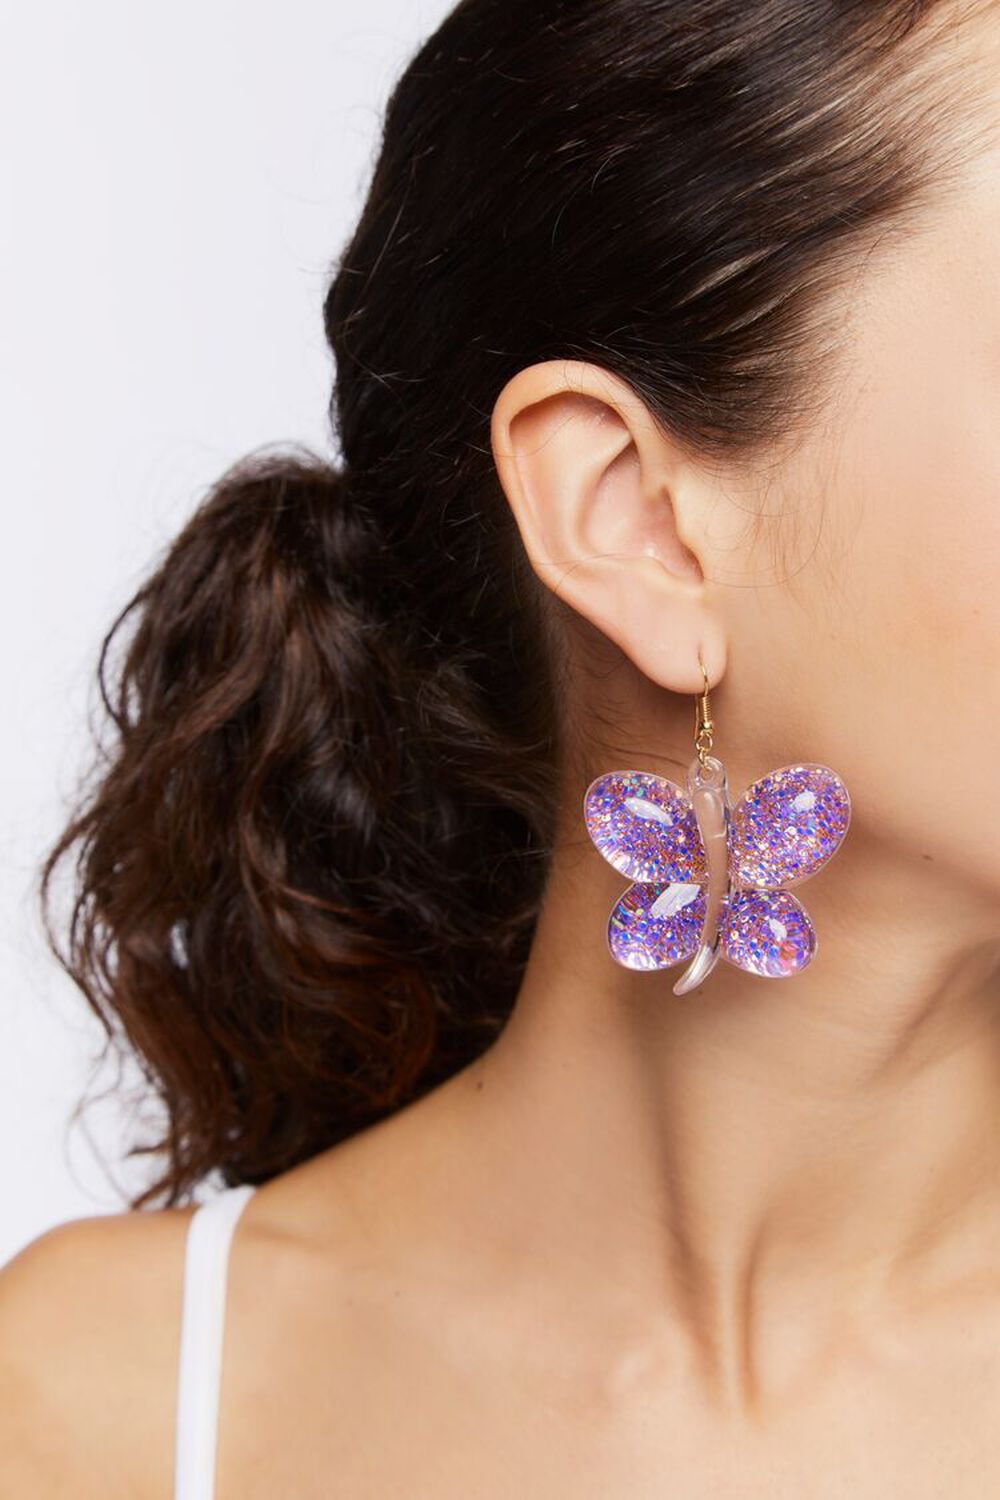 Butterfly earring